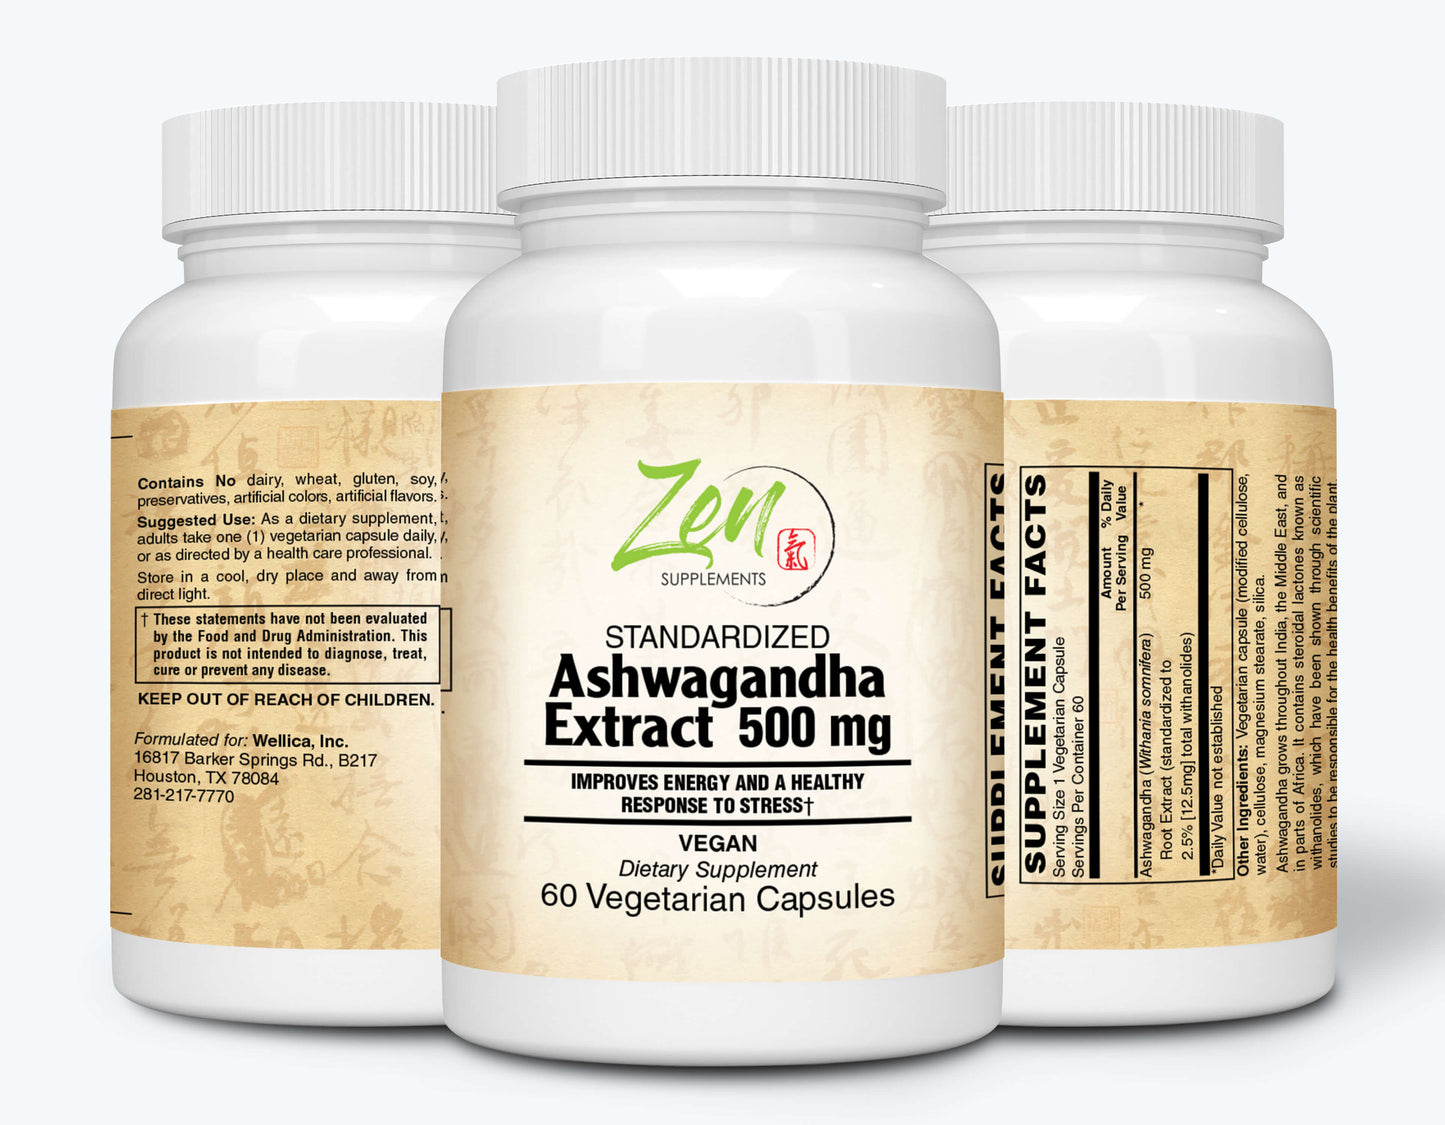 Ashwagandha Extract Benefits